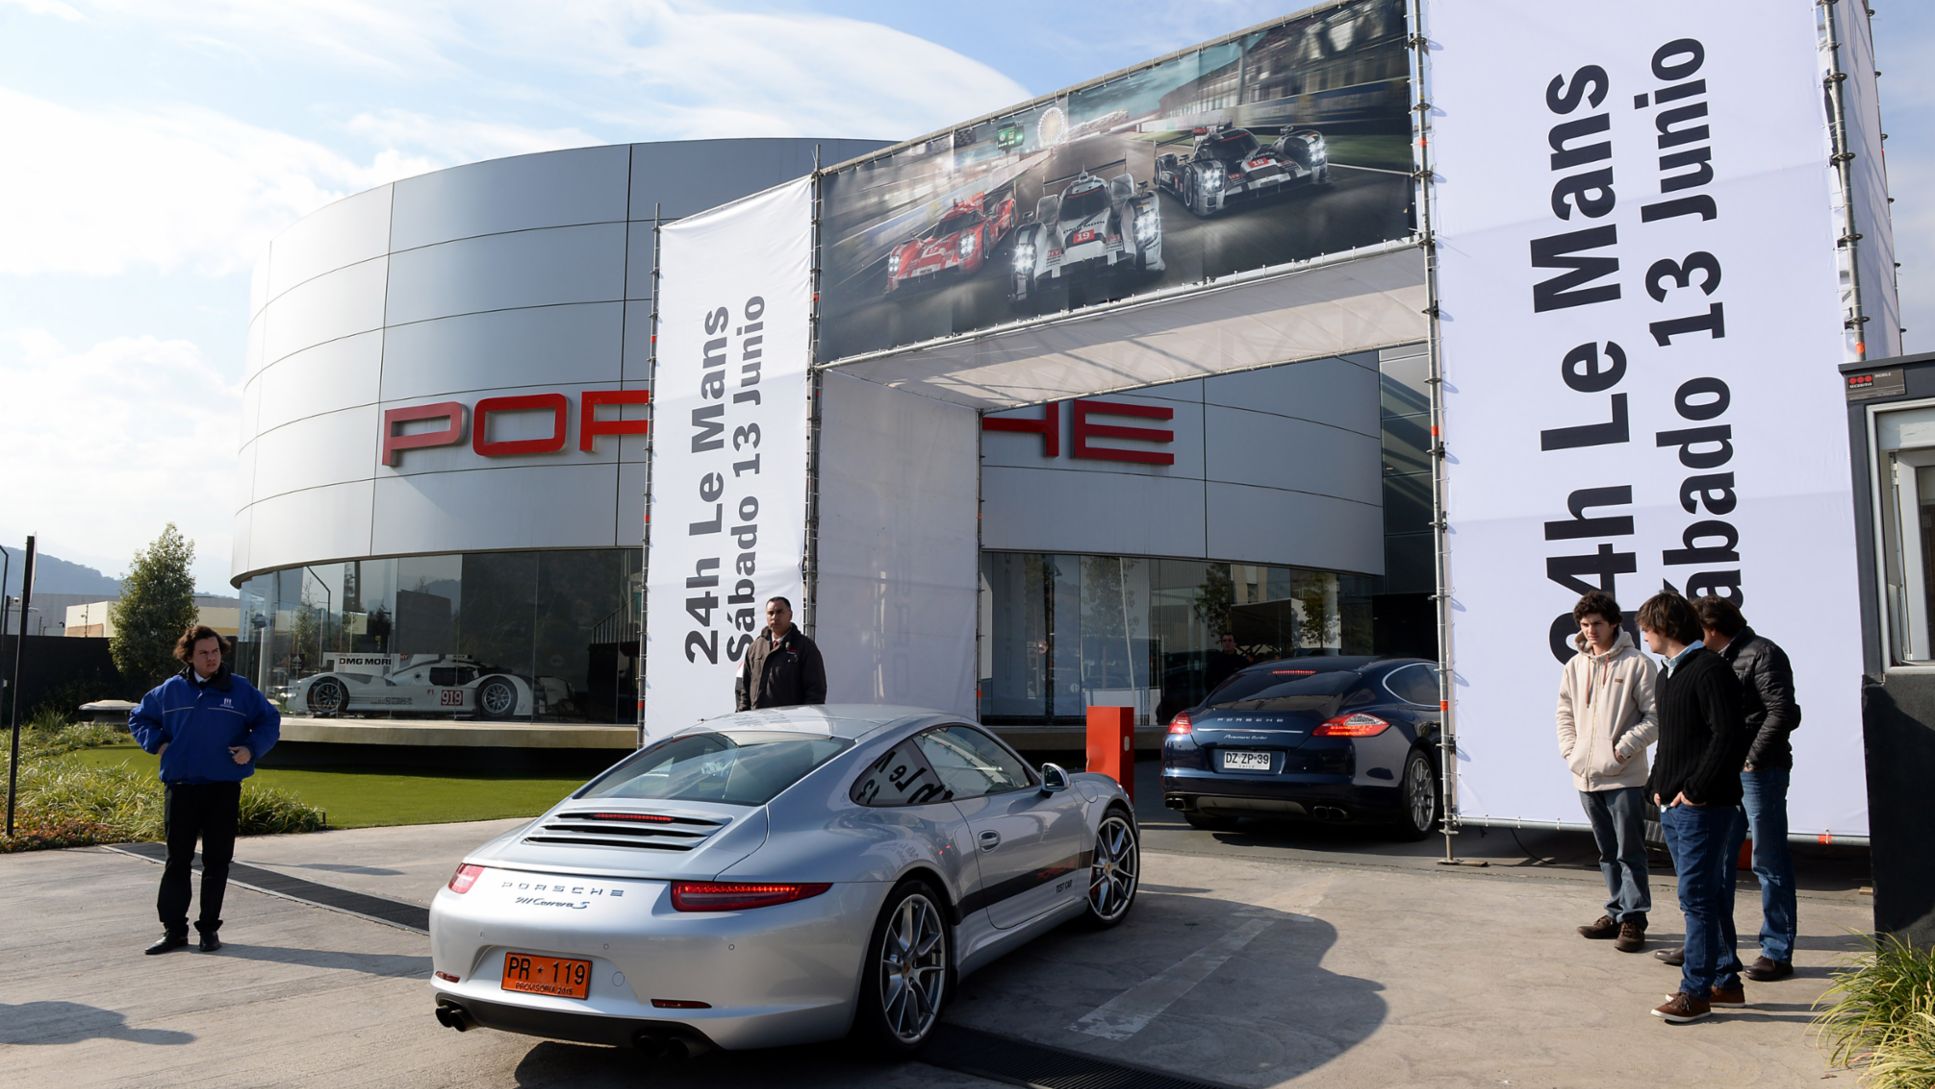 Porsche Center Santiago celebra las 24 horas de Le Mans